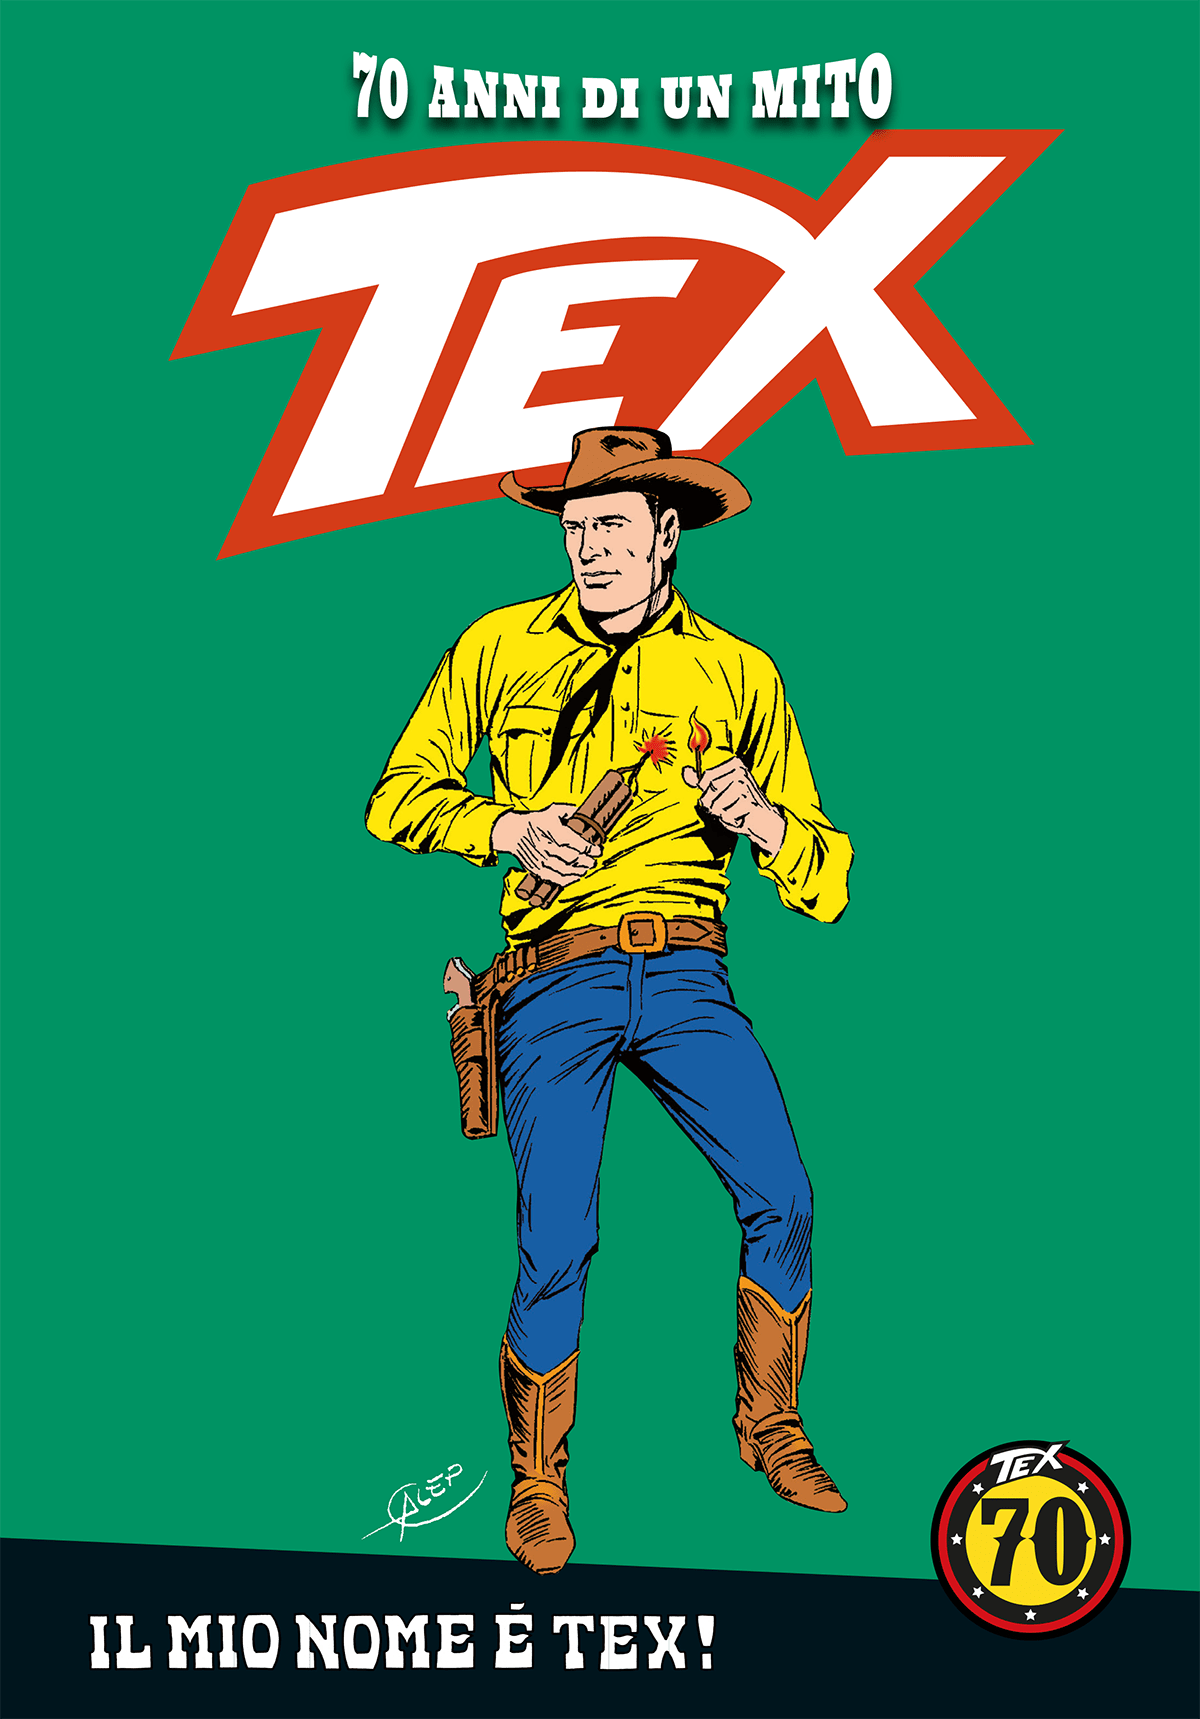 Il mio nome è Tex!